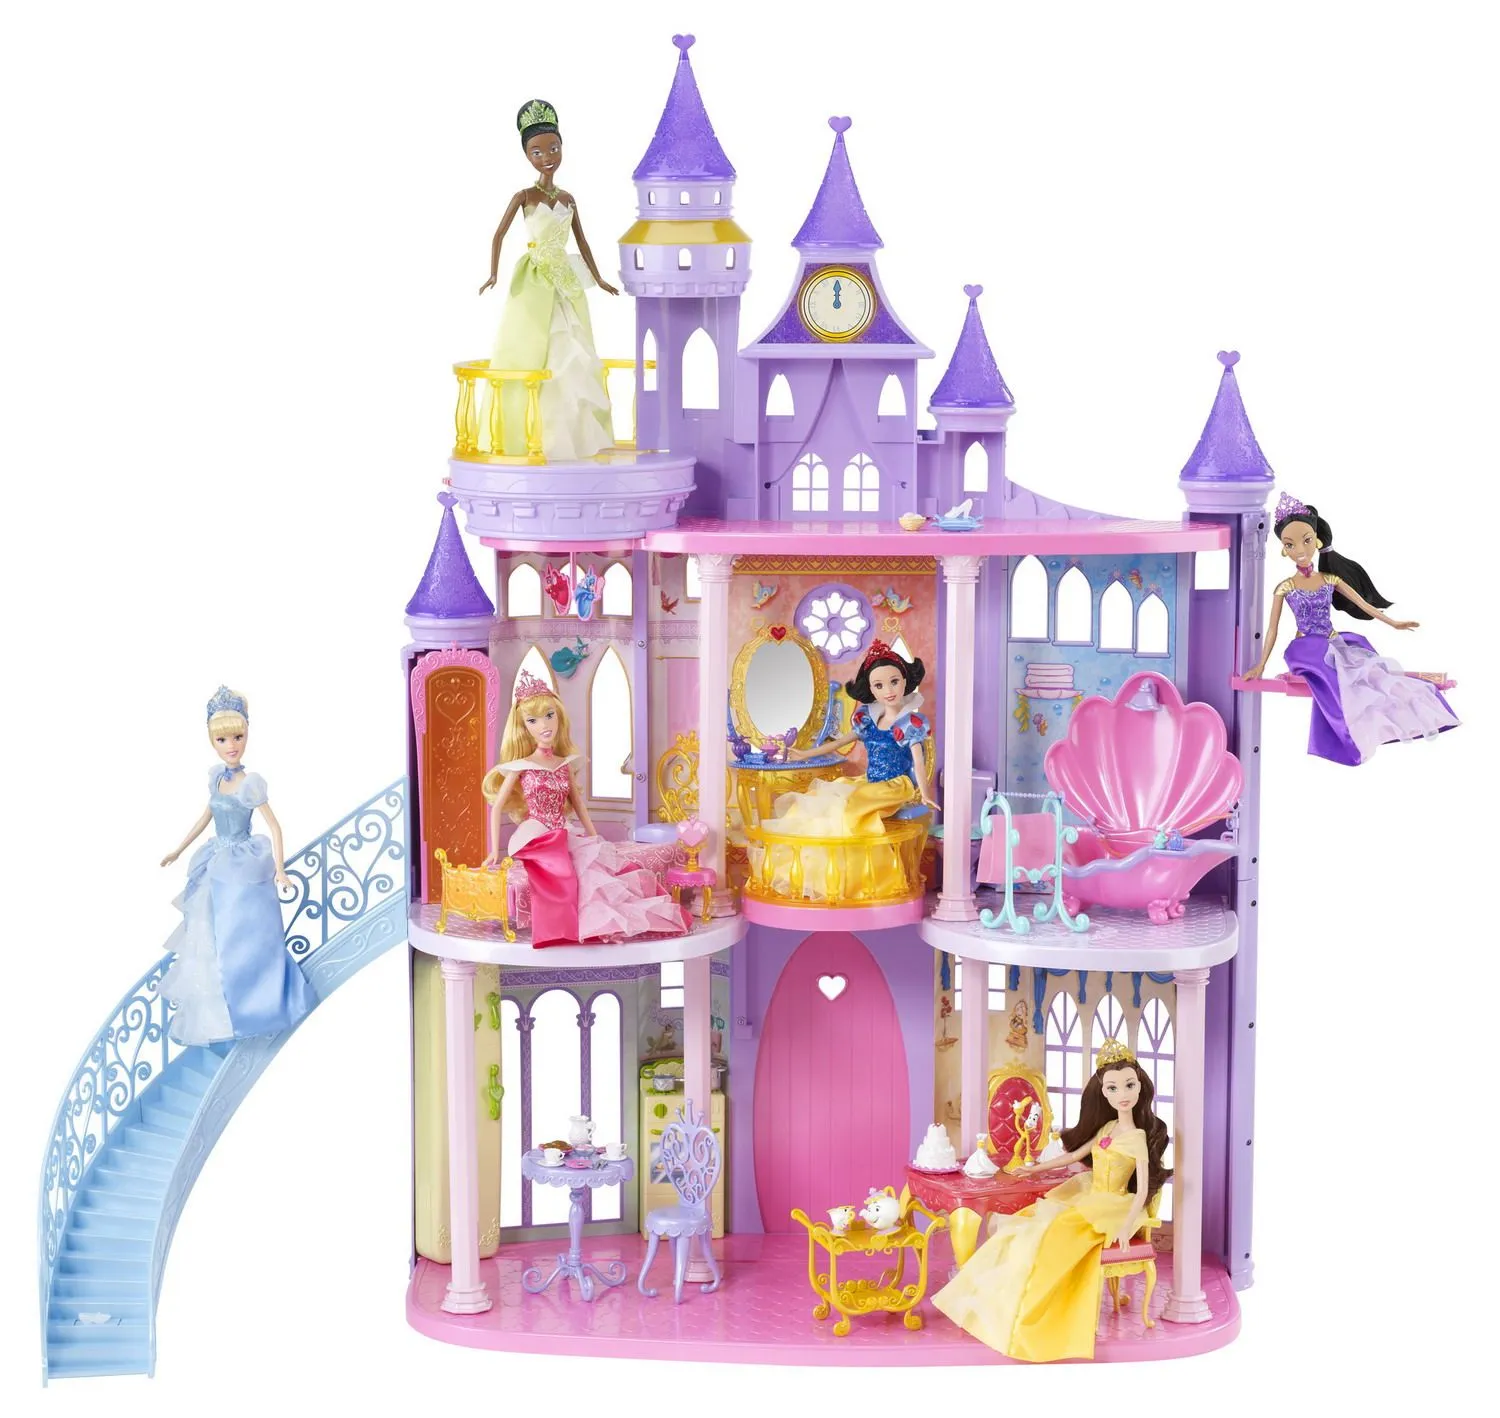 Fondos princesas Disney con castillos - Imagui